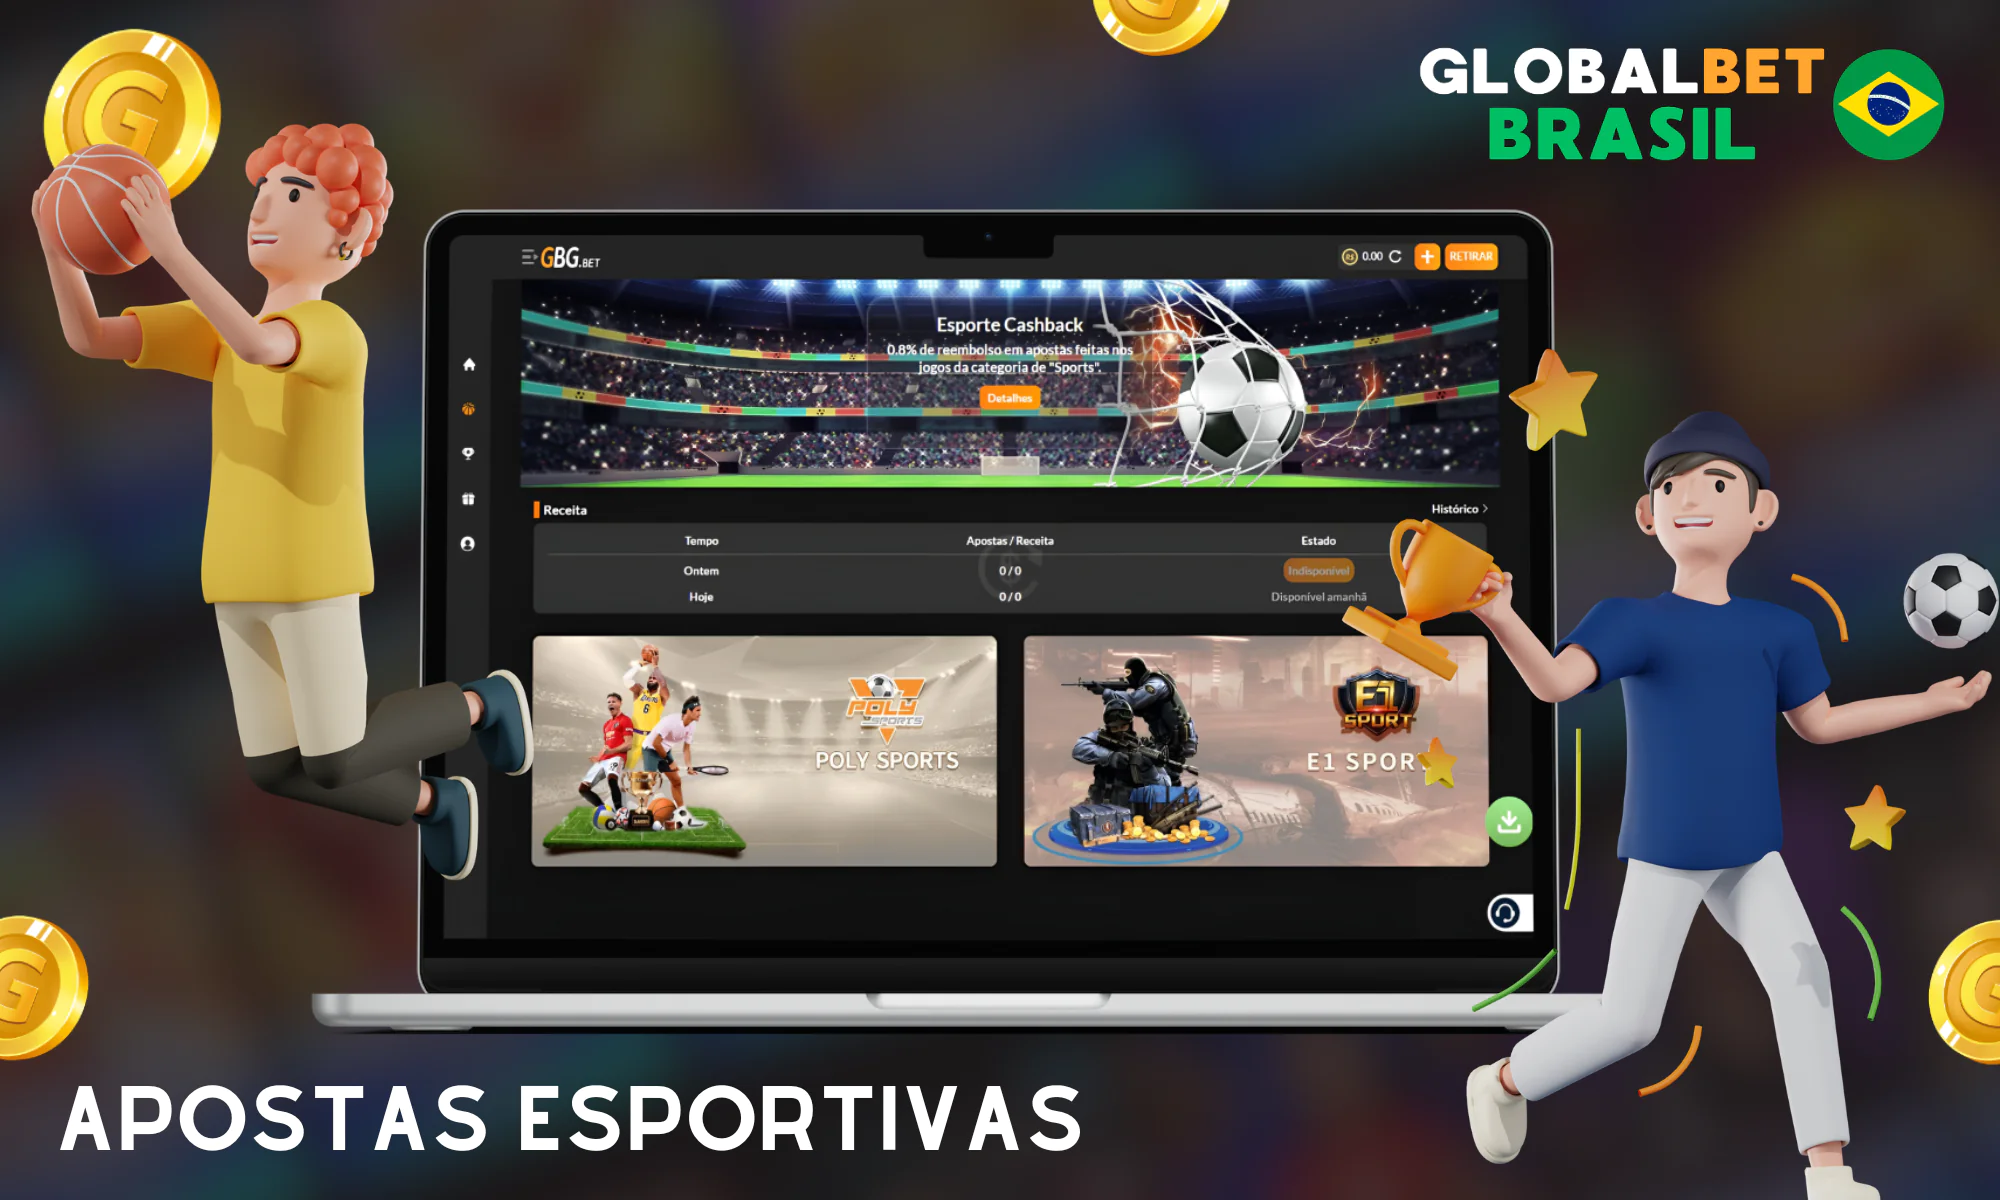 Mais de 20 tipos de eventos esportivos e apostas esportivas na Globalbet